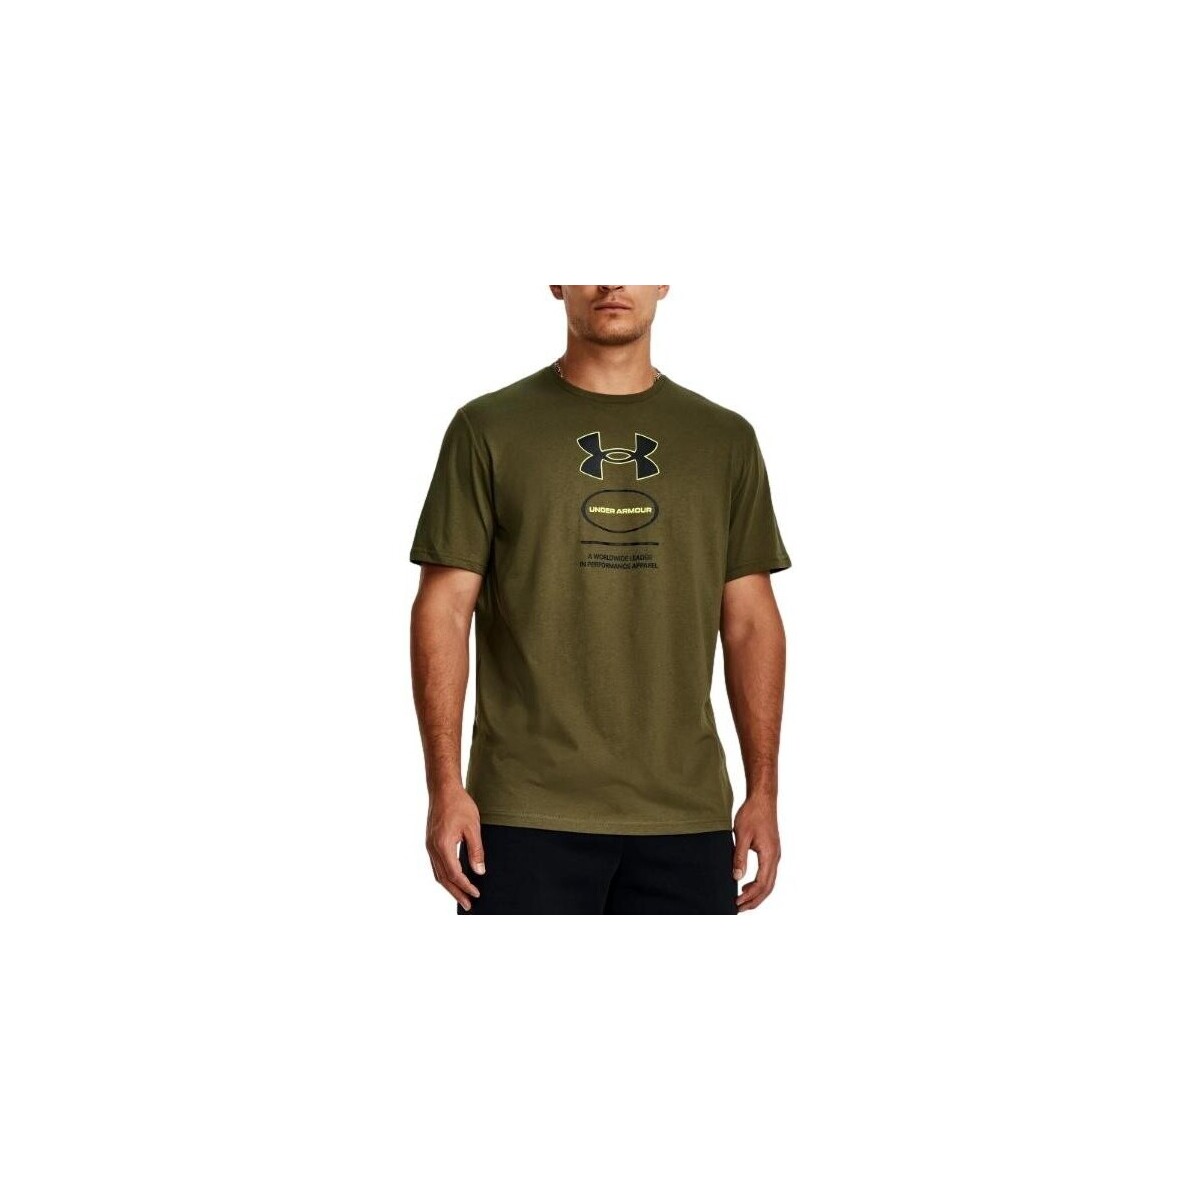 Kleidung Herren T-Shirts Under Armour CAMISETA HOMBRE   1380957 Grün